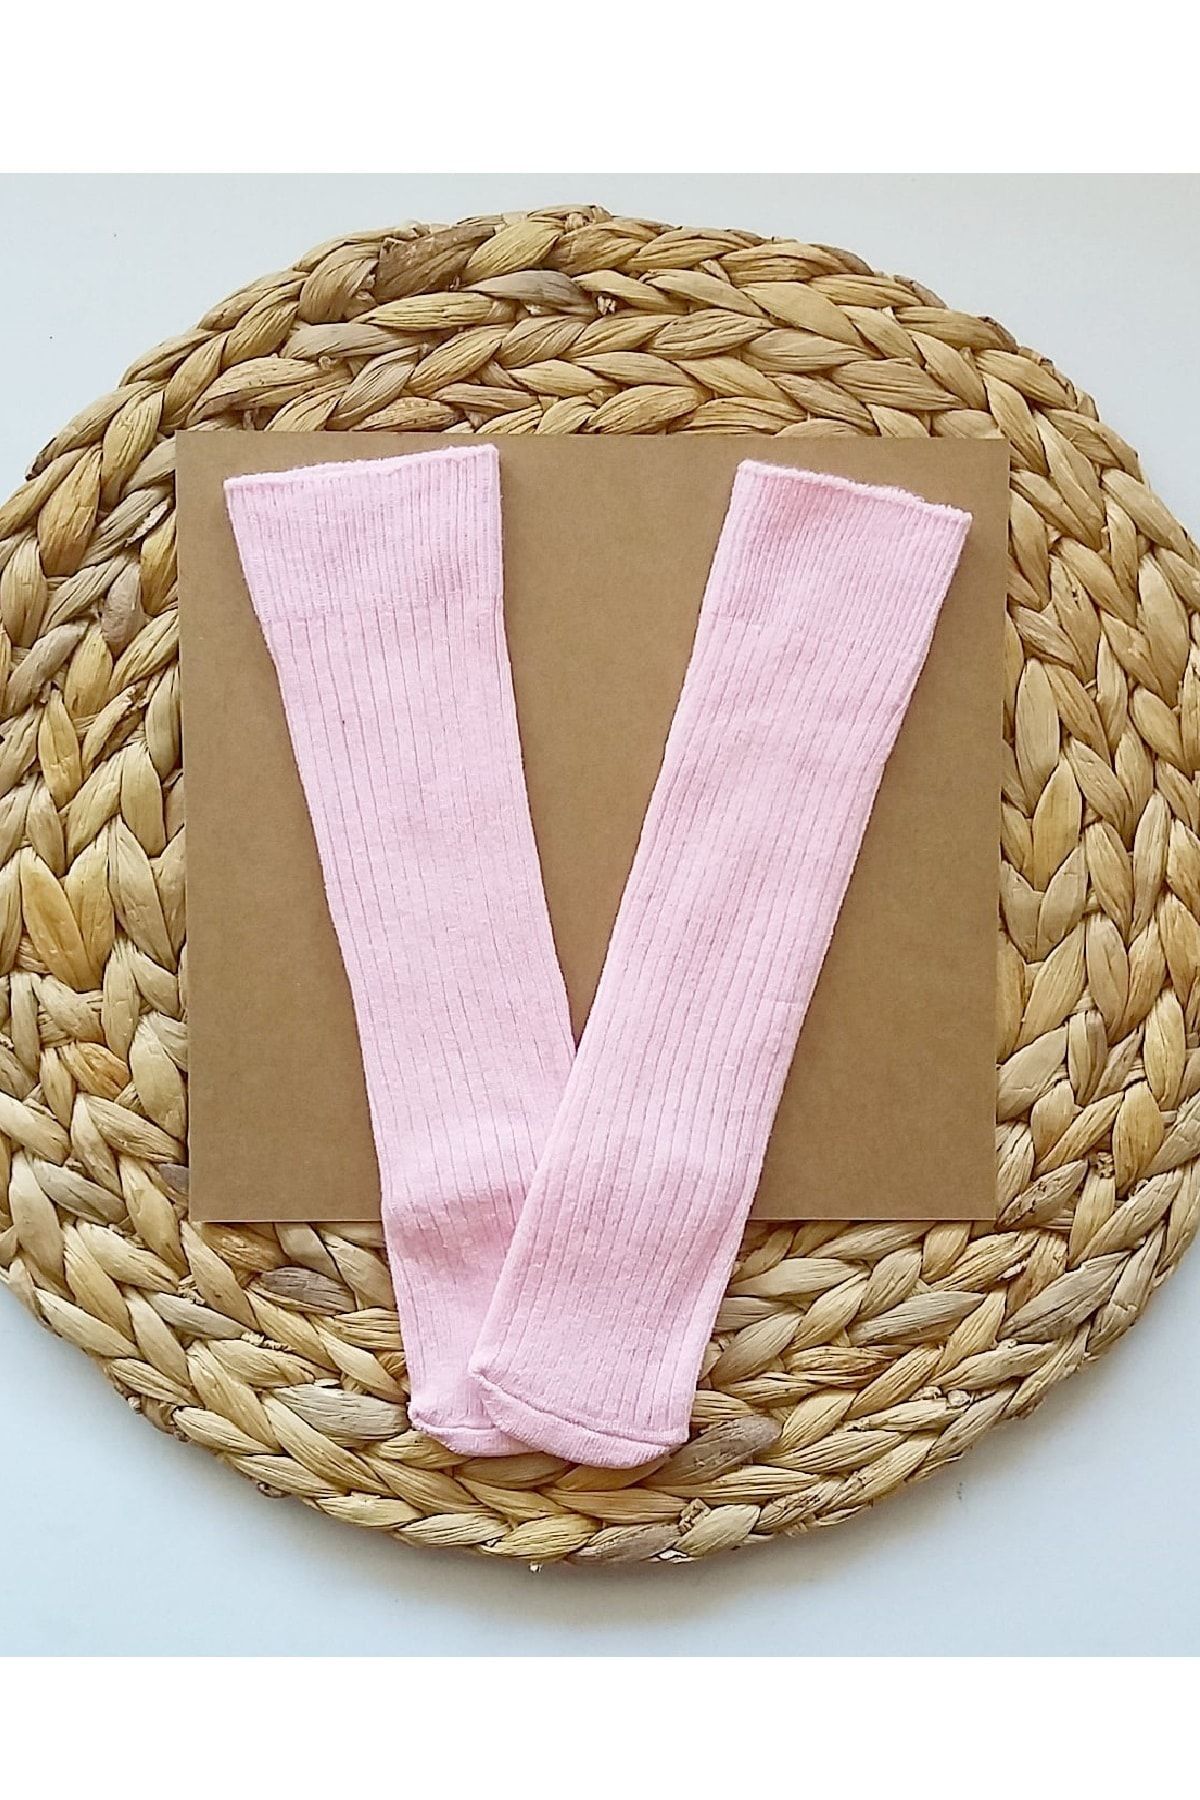 Asa Bebek Çocuk Kız Bebek Düz Fitilli Pembe Diz Altı Çorap Bebek Çorapları